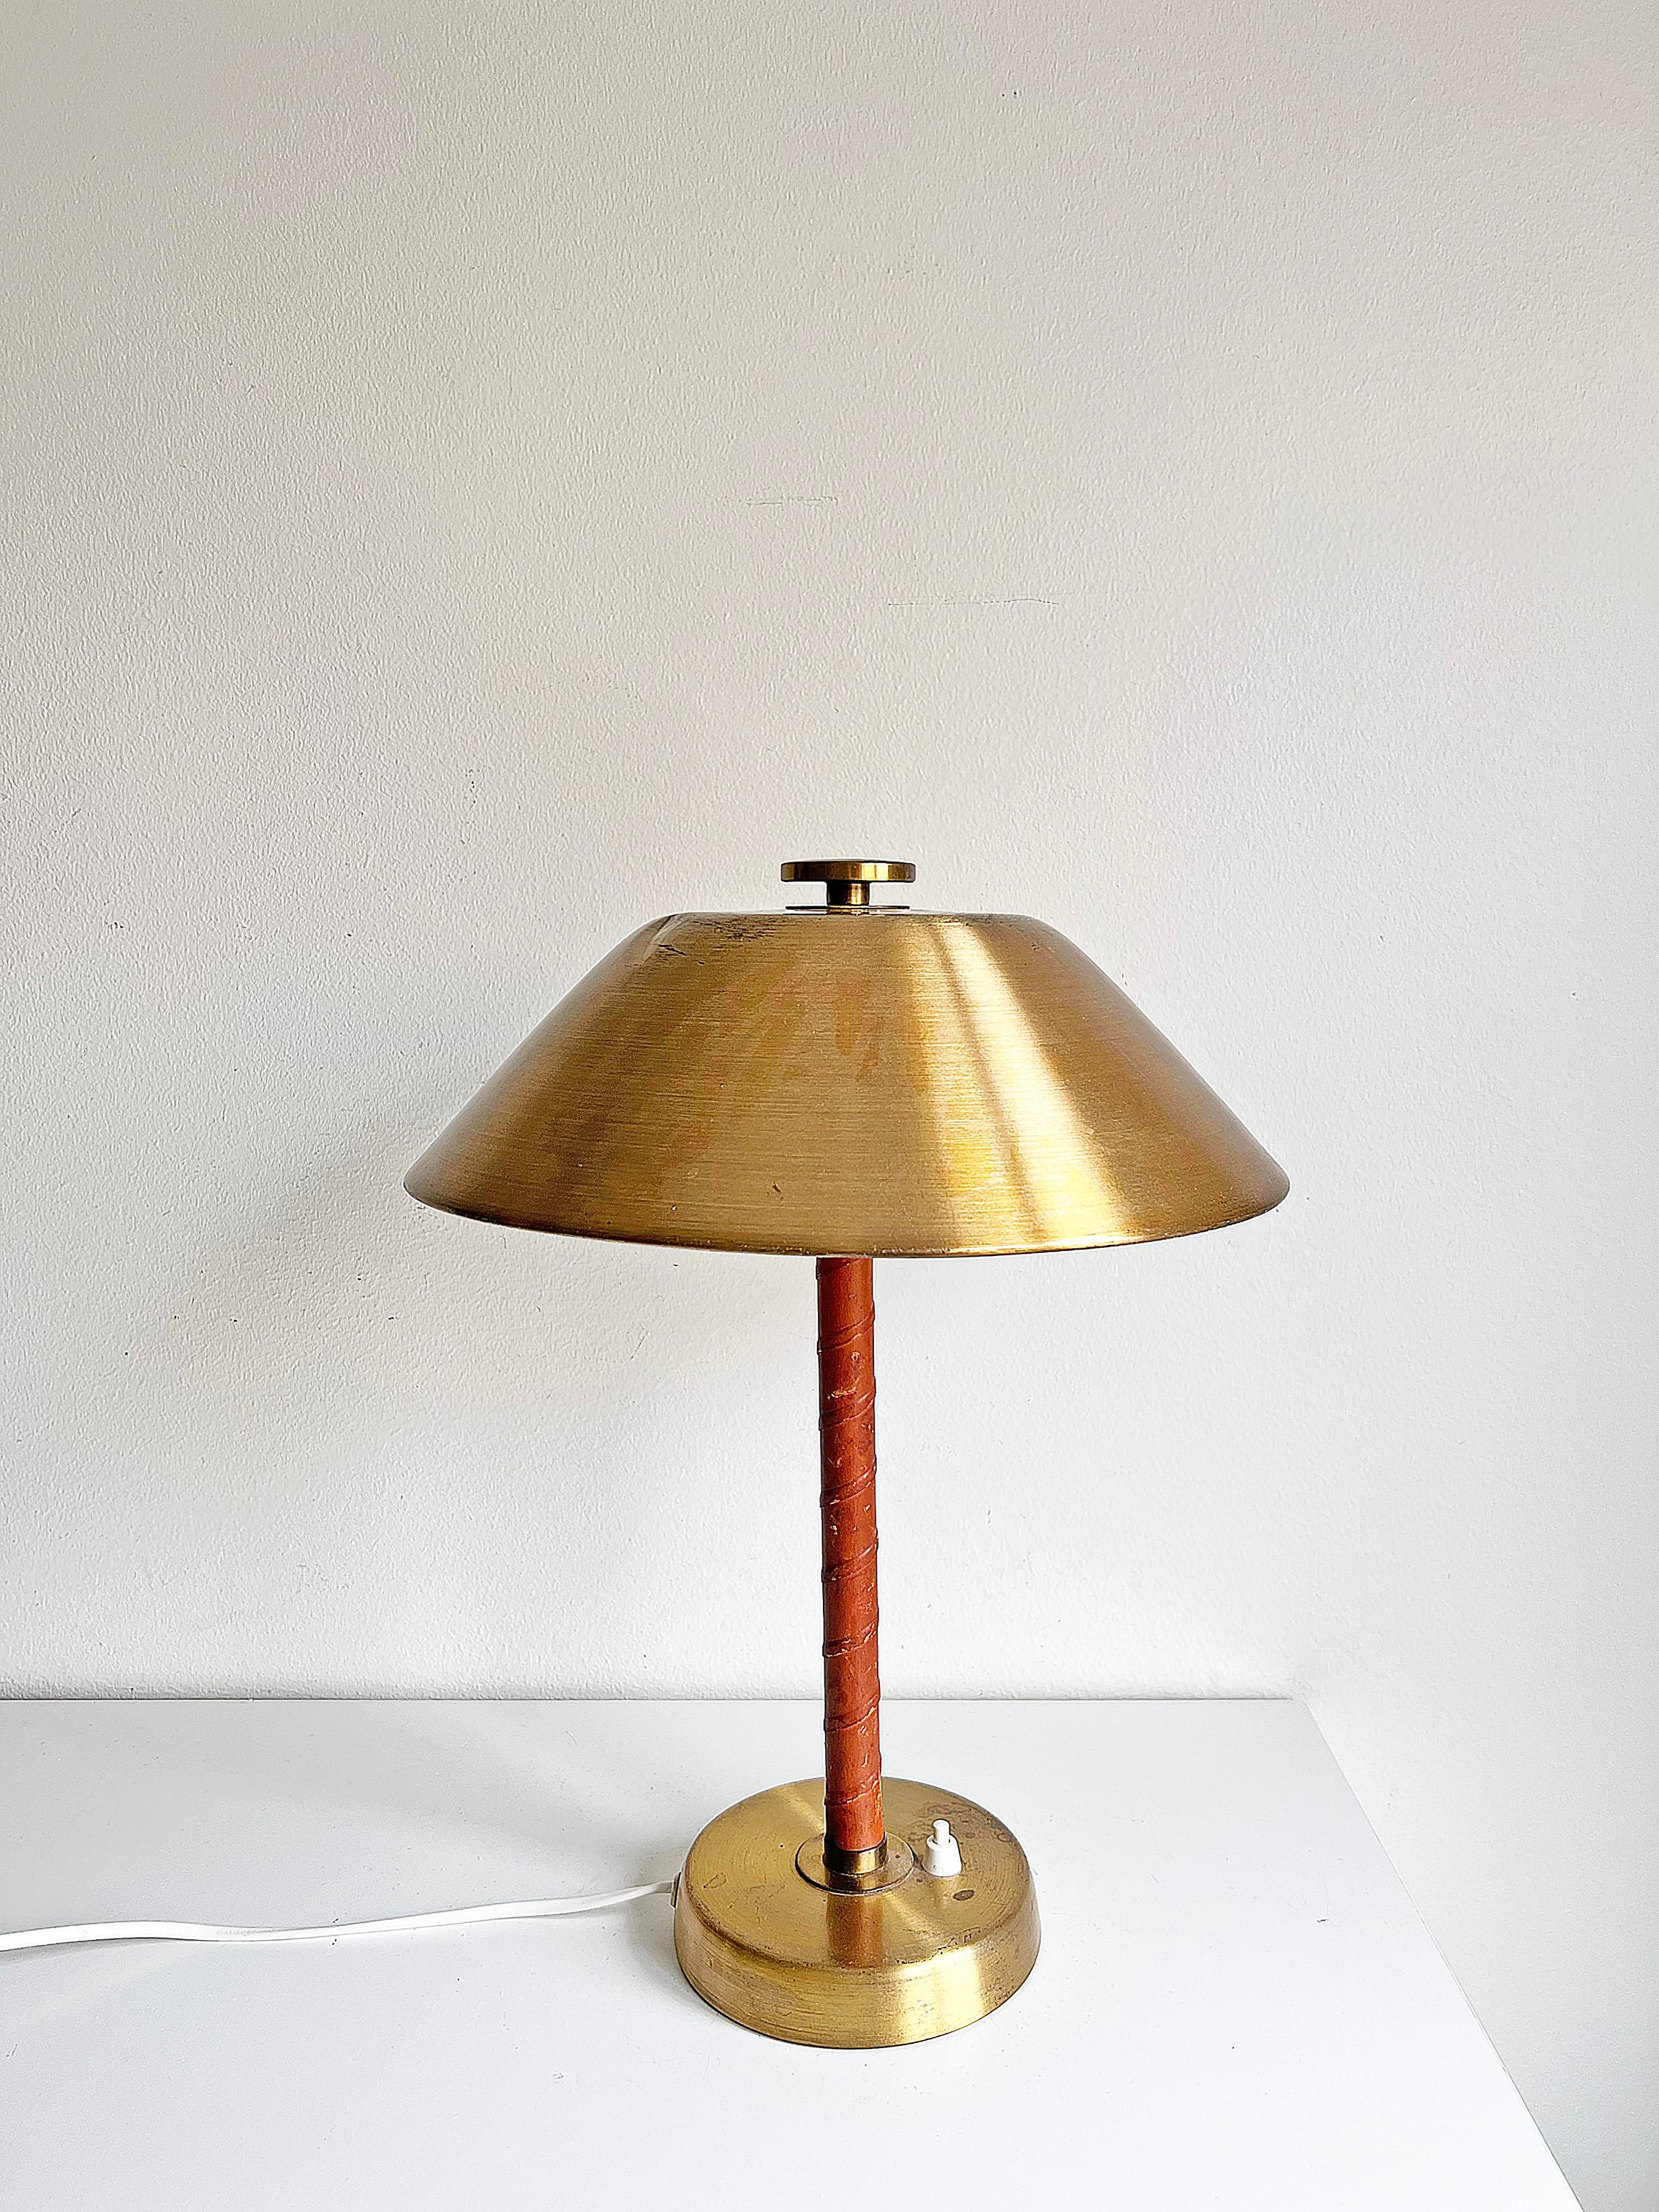 Tischlampe Modell 5014 aus Messing und cognacfarbenem Leder von Einar Bäckström, ca. 1940er Jahre.
Signiert auf der Unterseite. Neu verkabelt. Wir empfehlen, diese Lampe gemäß den elektrischen Normen des Landes des Käufers neu zu